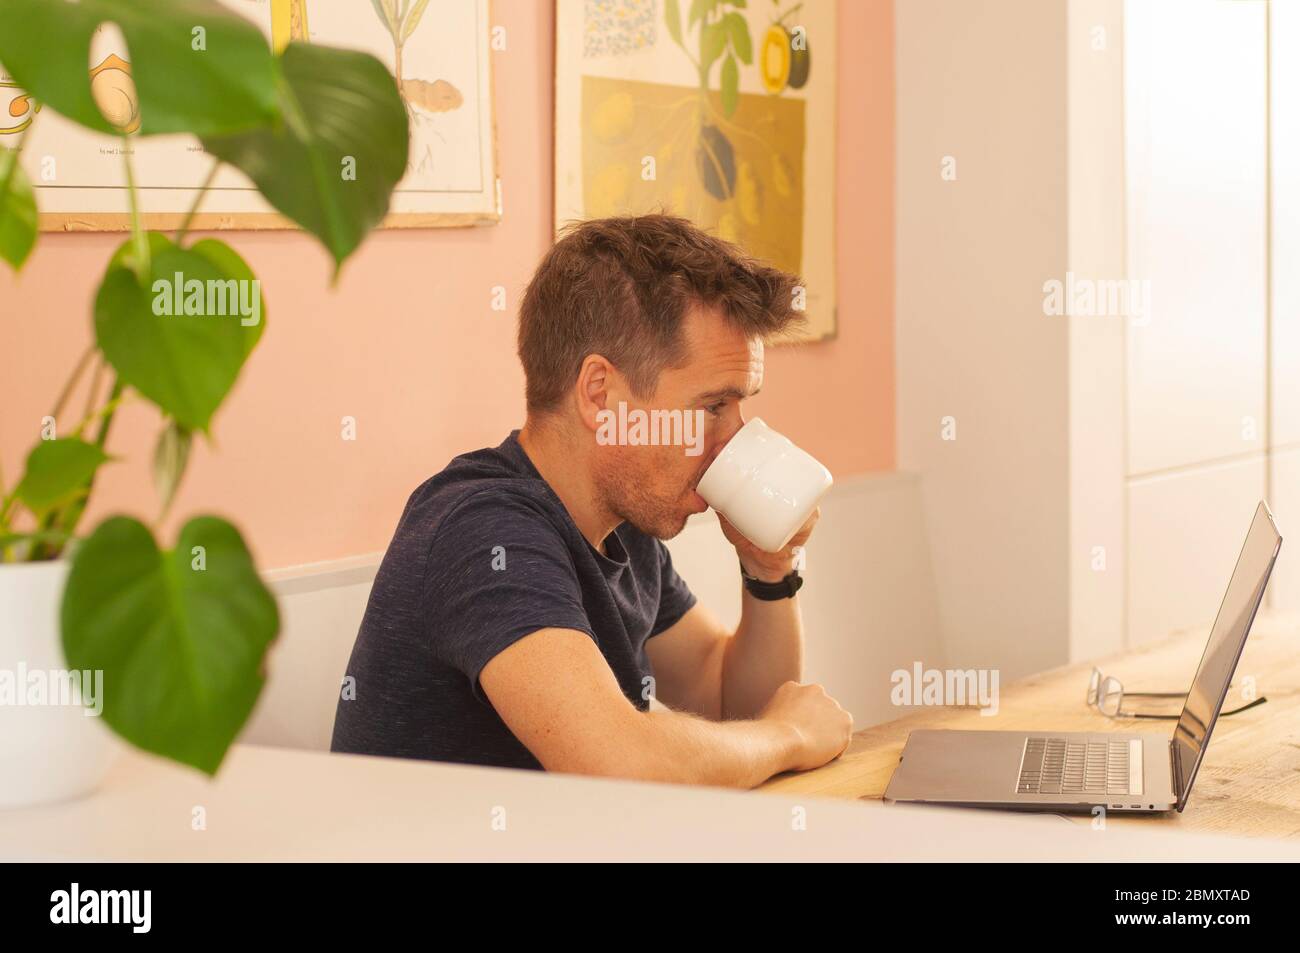 Ritratto dell'uomo che lavora da casa su un computer portatile durante il blocco del coronavirus, bere caffè. Formato orizzontale. Foto Stock